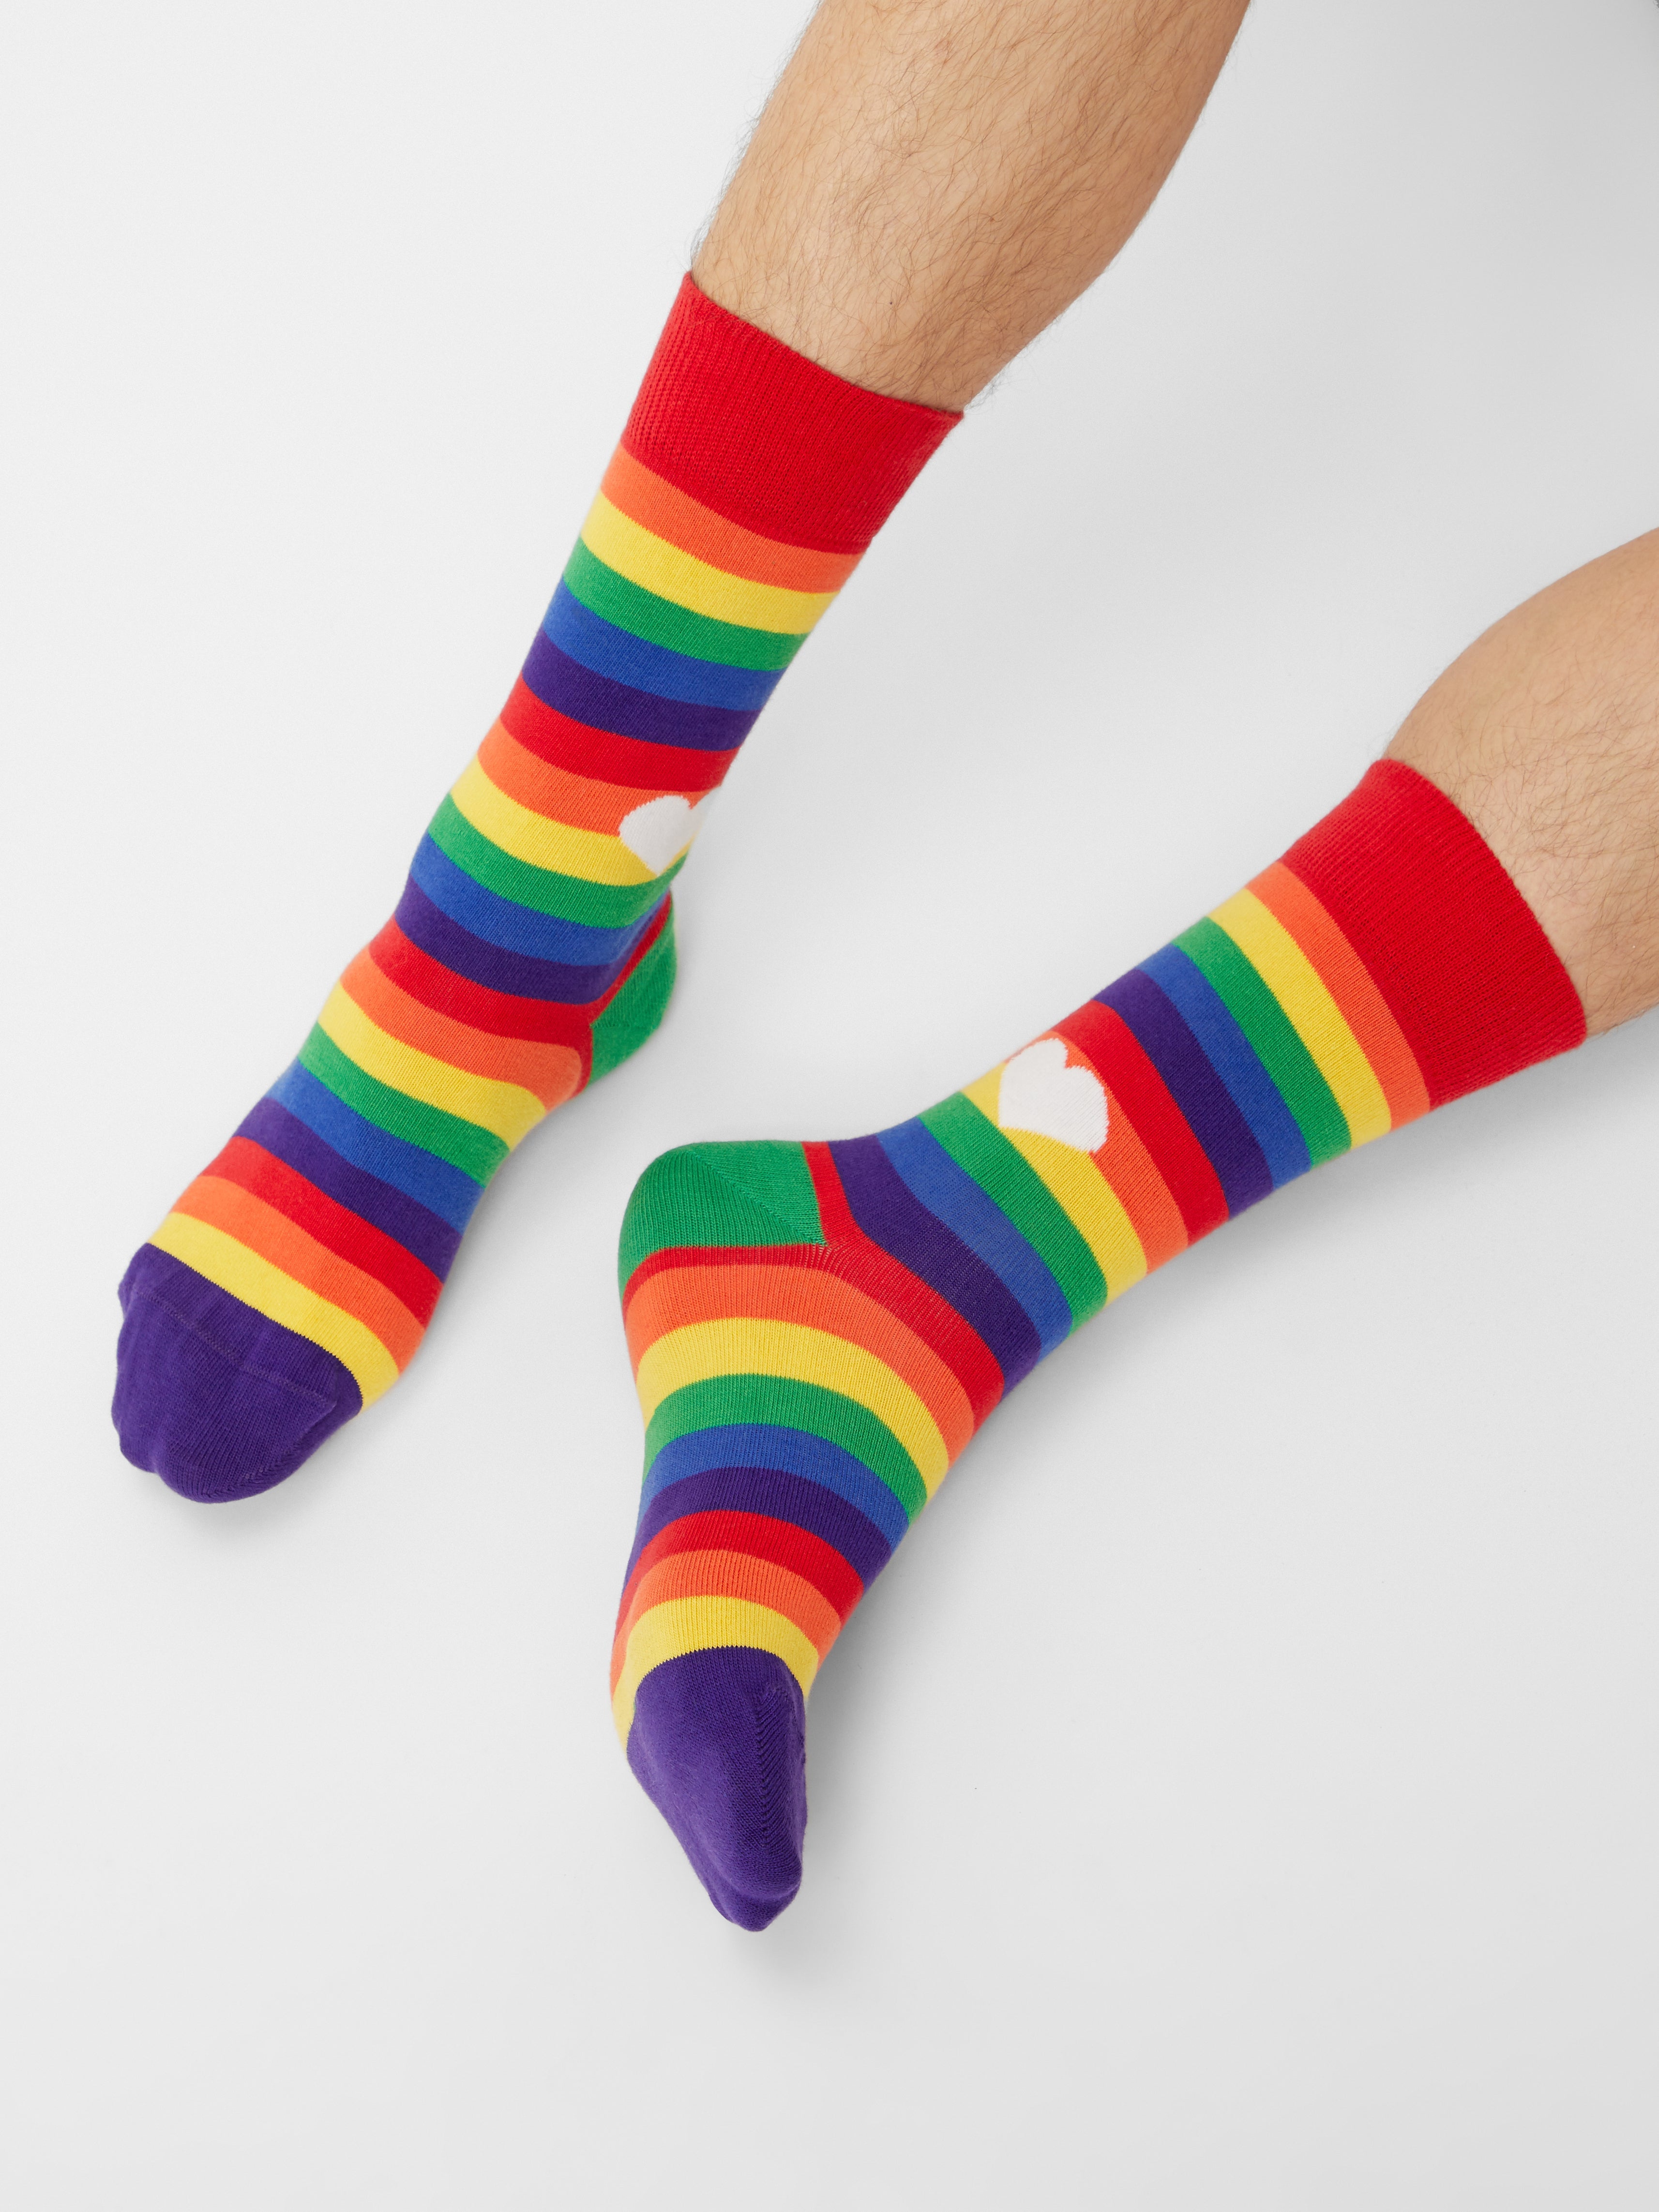 Rainbow Socks - EqualiTee